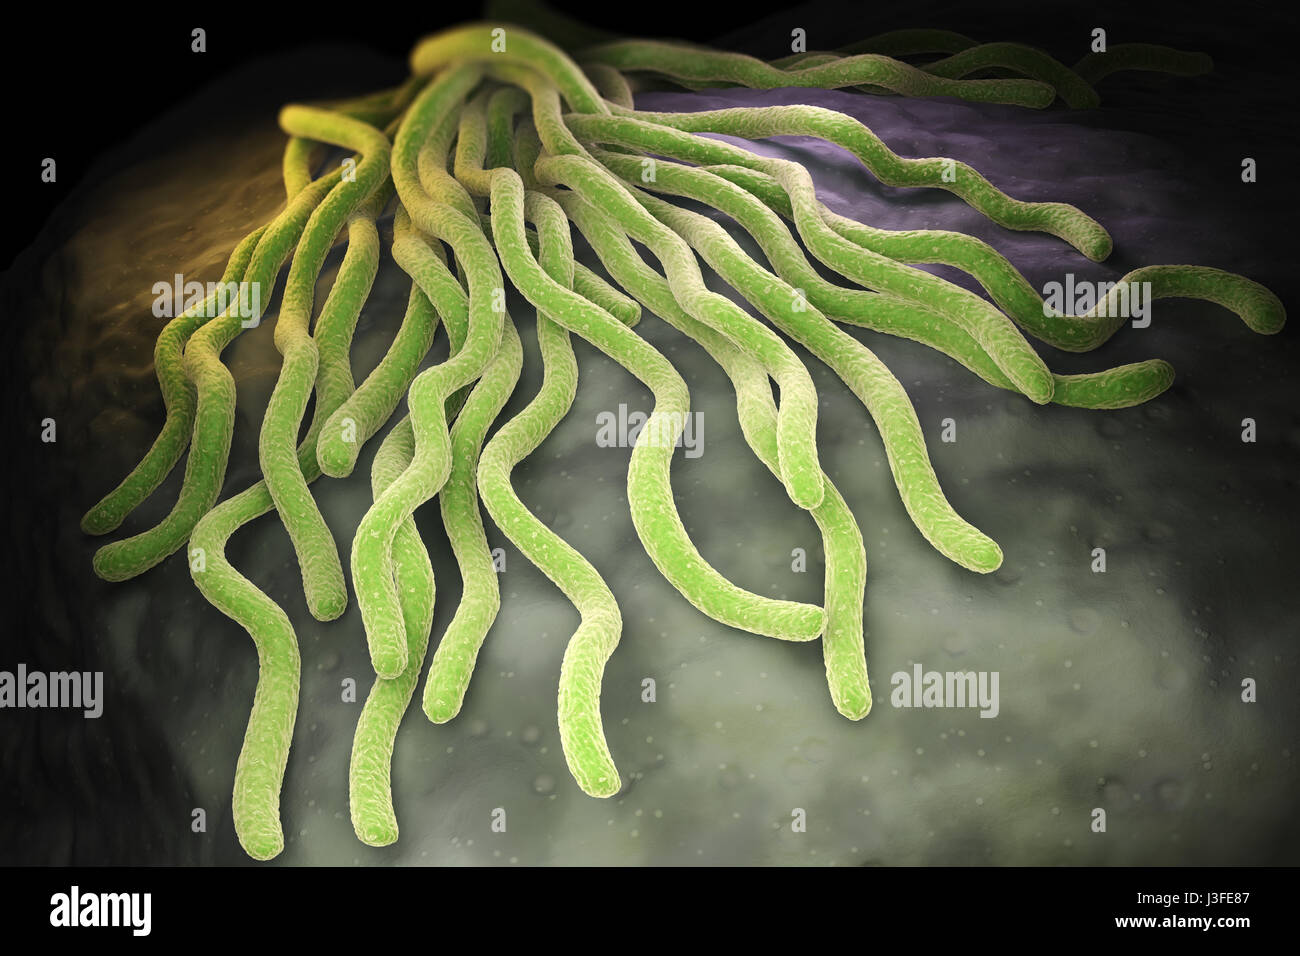 Colonie de bactéries Borrelia burgdorferi, l'agent bactérien de la maladie de Lyme transmise par les tiques. 3D illustration Banque D'Images